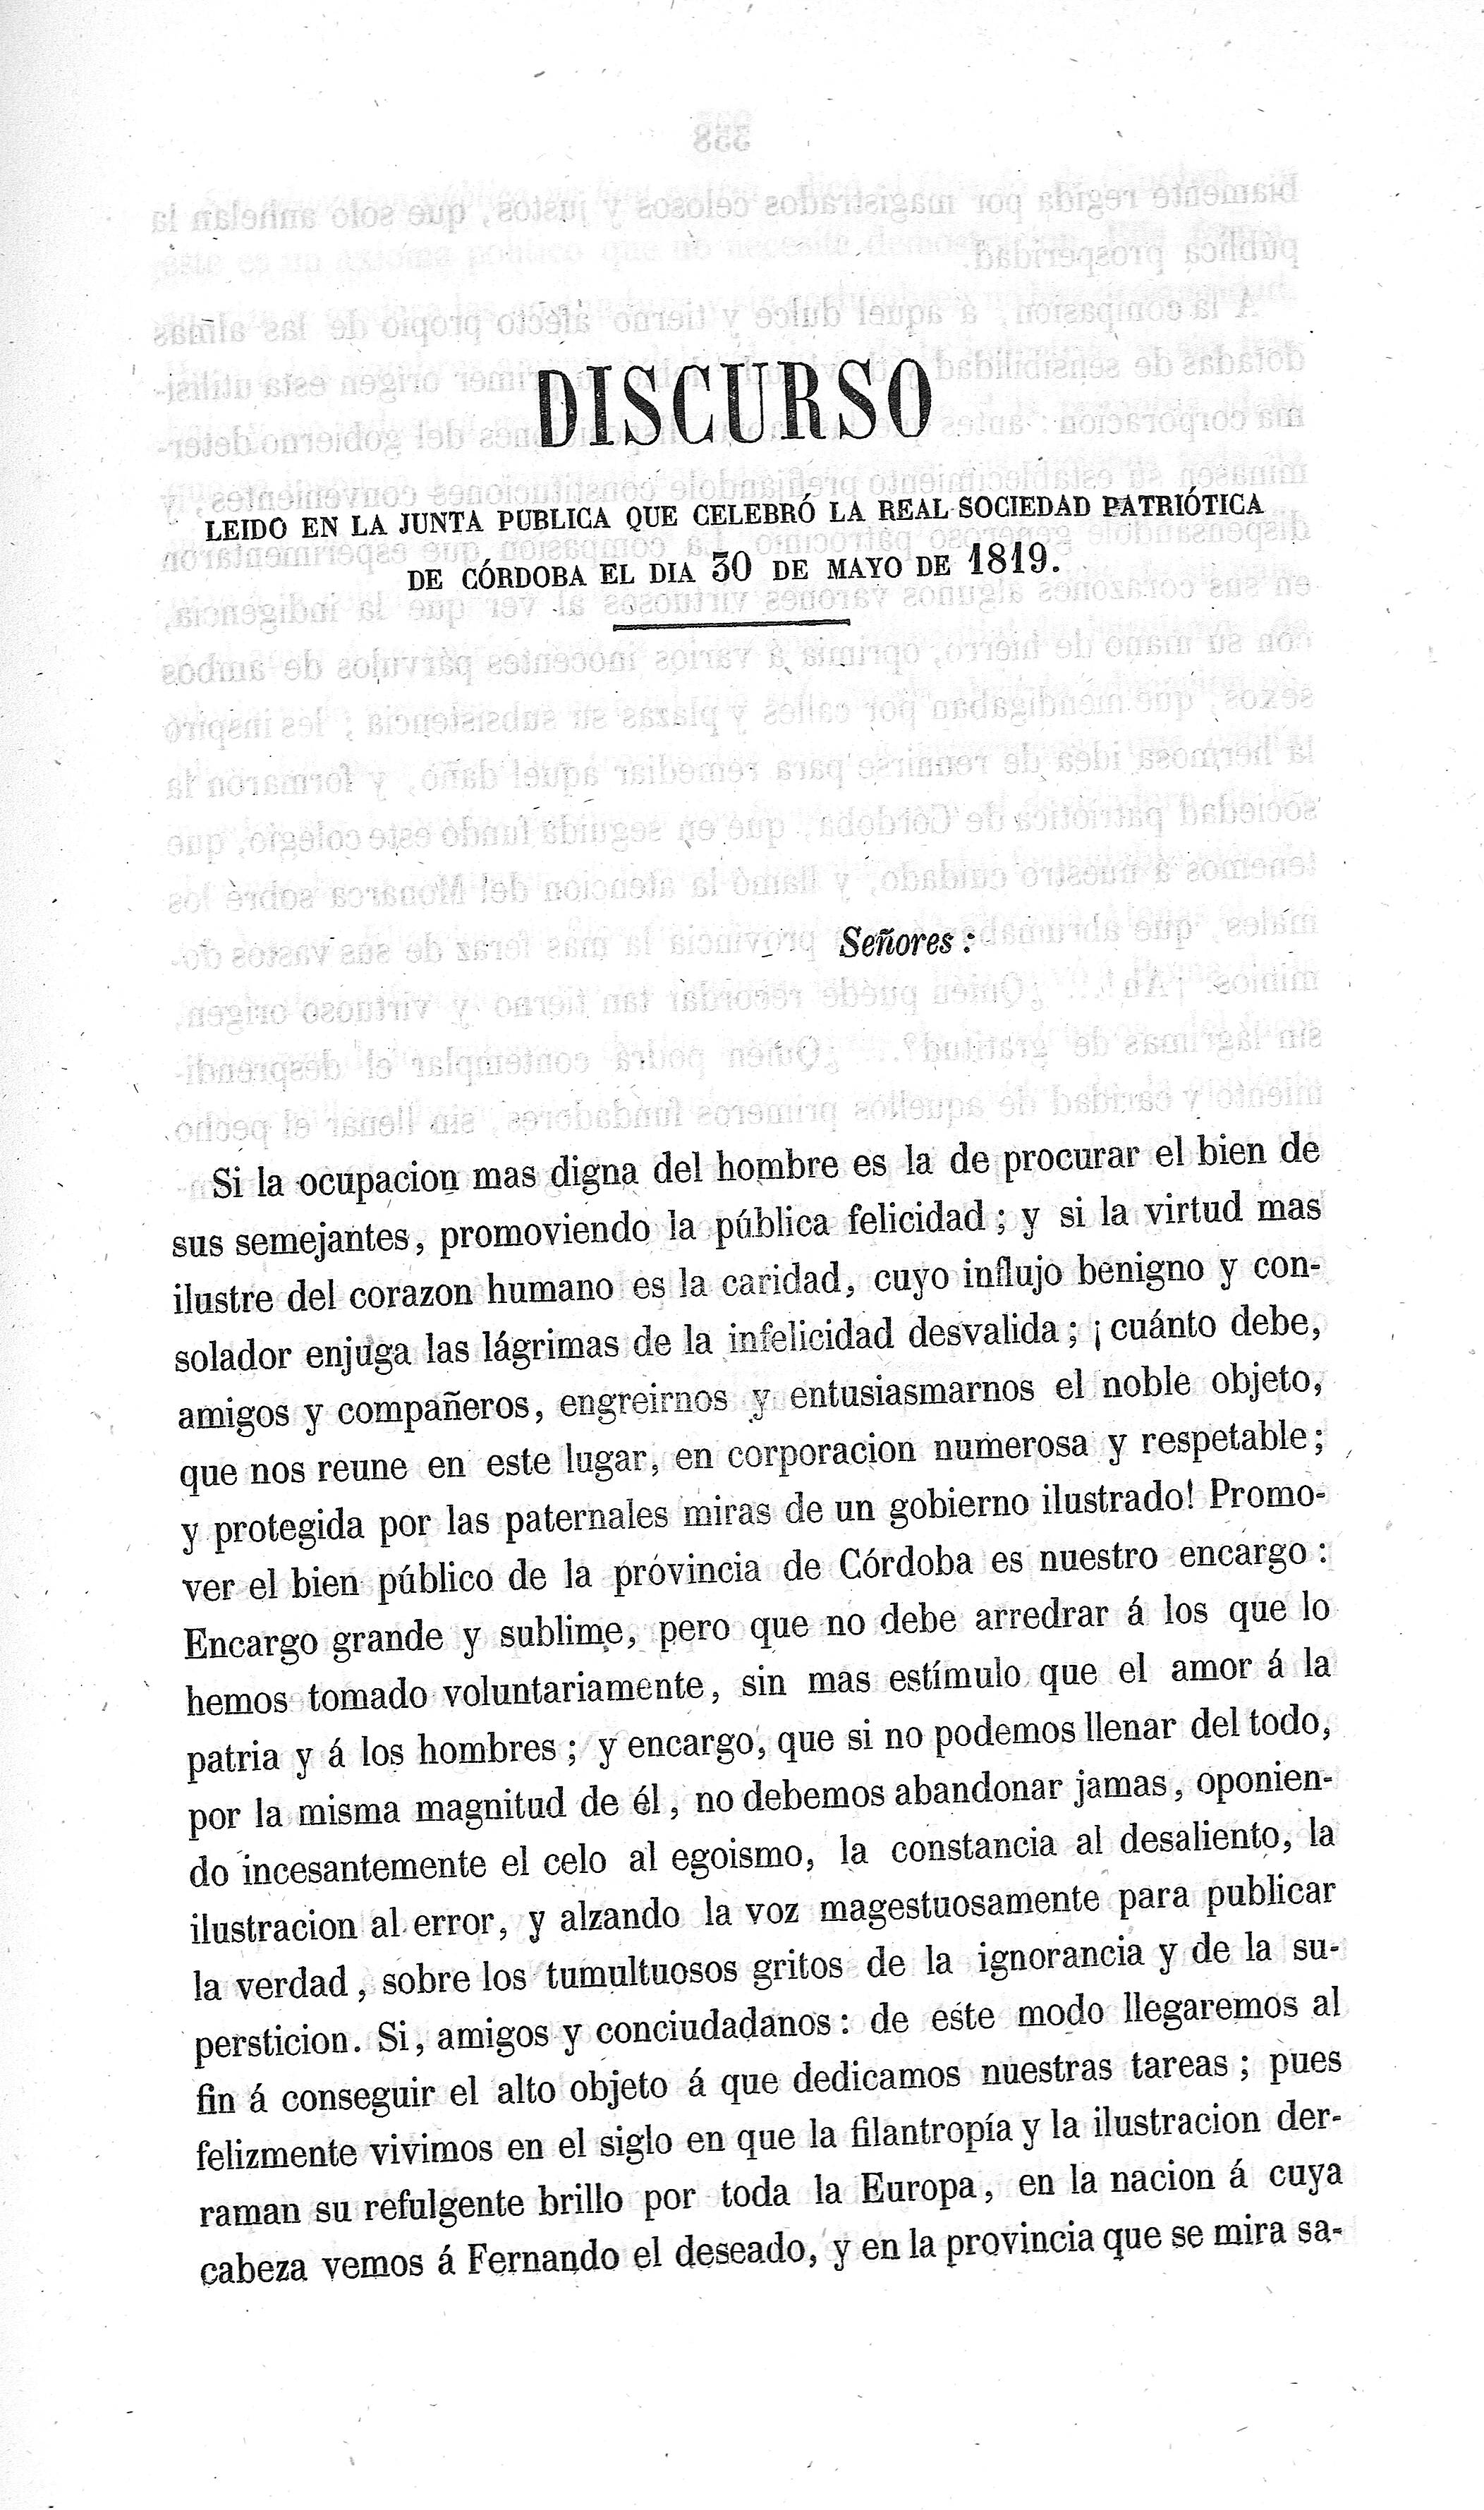 Discurso leído en la Junta Pública que se celebró la Real Sociedad Patriótica de Córdoba el día 30 de mayo de 1819